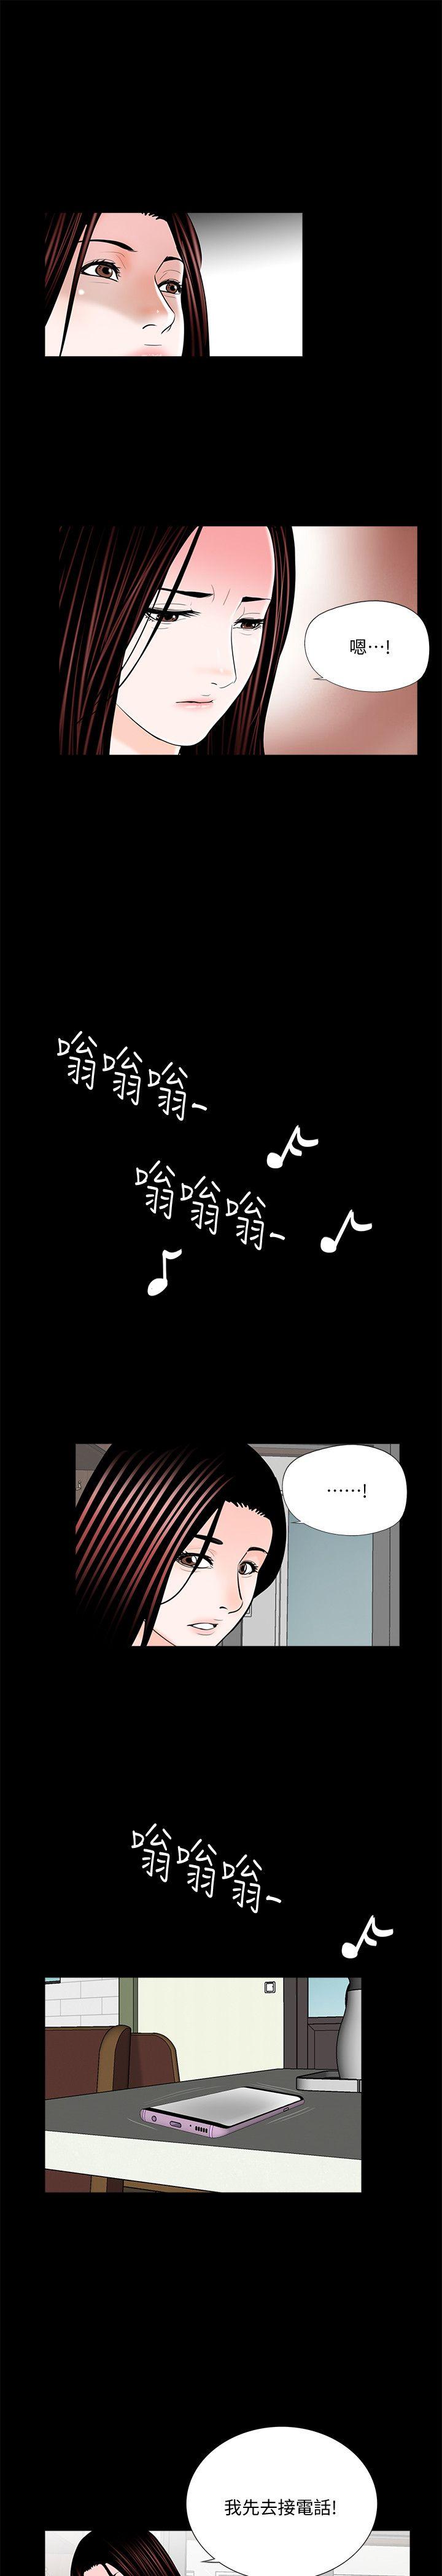 韩国污漫画 夢魘 第53话-真书的梦魇[05 24